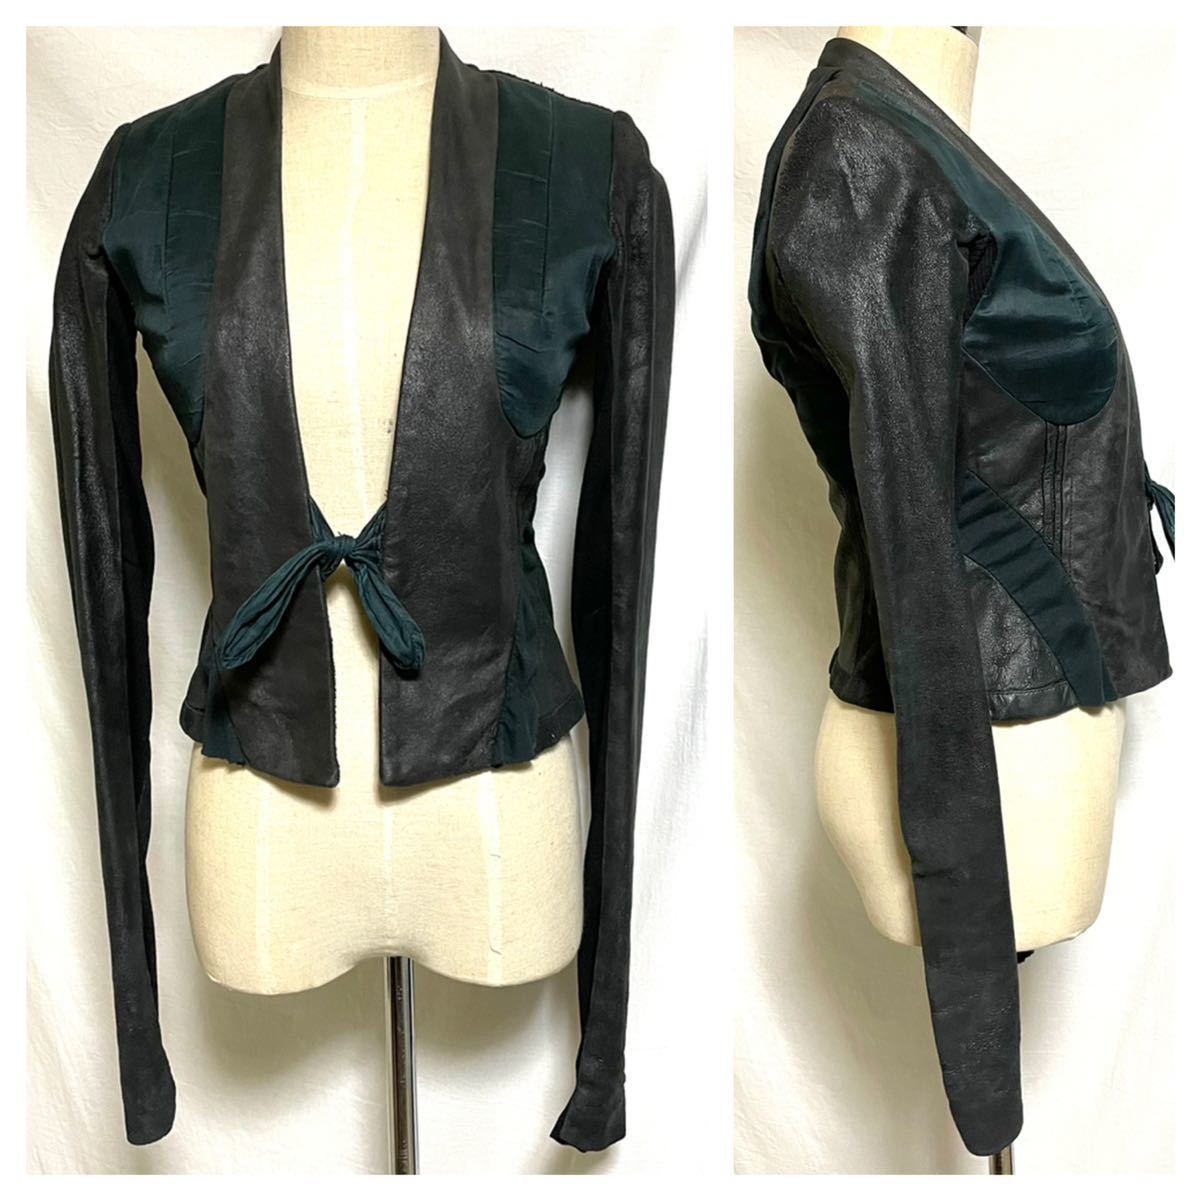  настоящий  ... способ  ... ... изменение   кожа   пиджак   черный  40 Rick Owens  коллекция  модель    блузон  